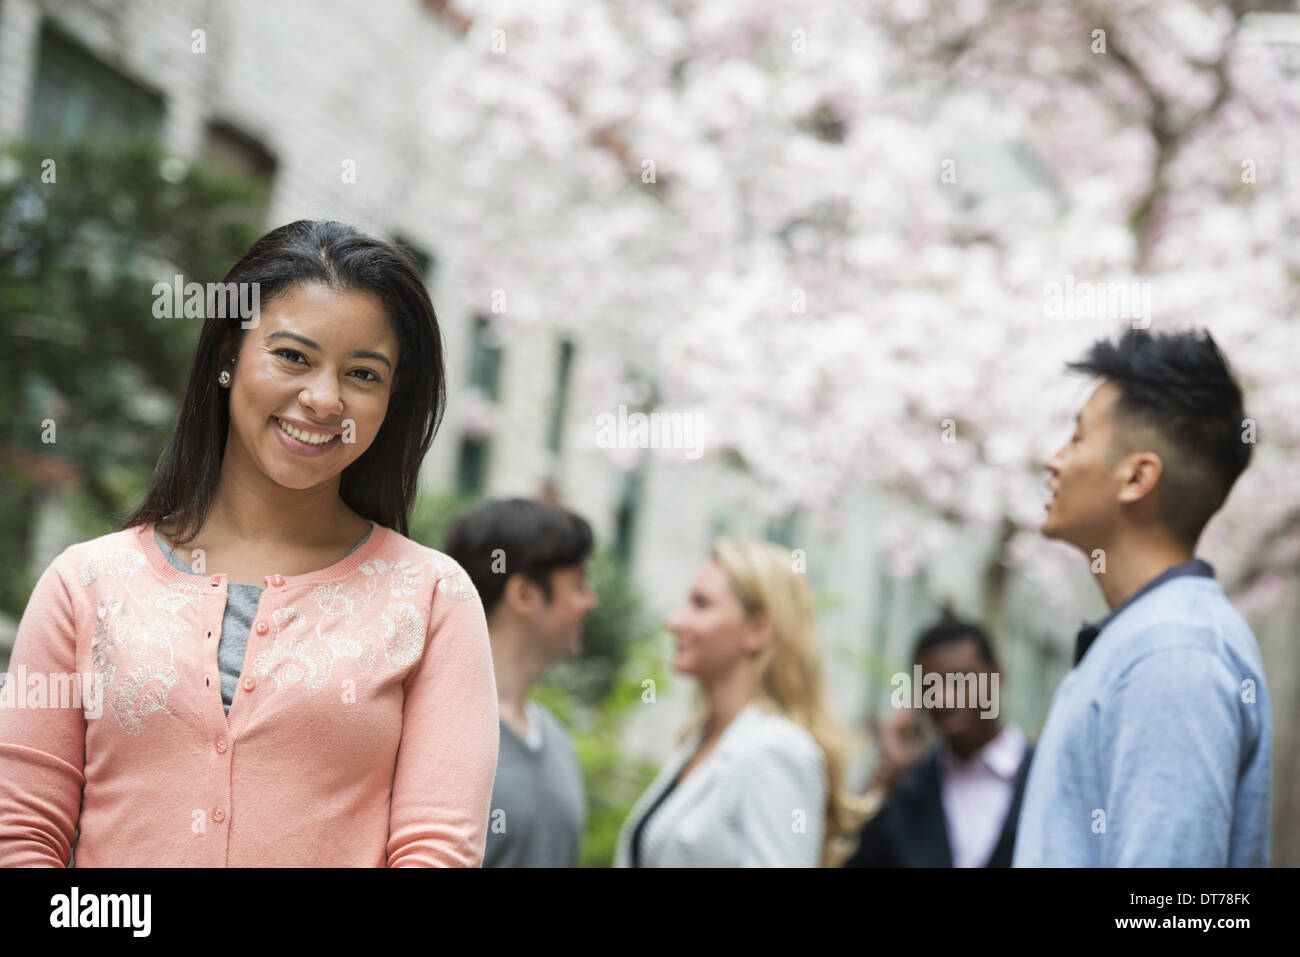 La vita della città in primavera. I giovani all'aperto in un parco della città. Una donna in maglia rosa con quattro persone in background. Foto Stock